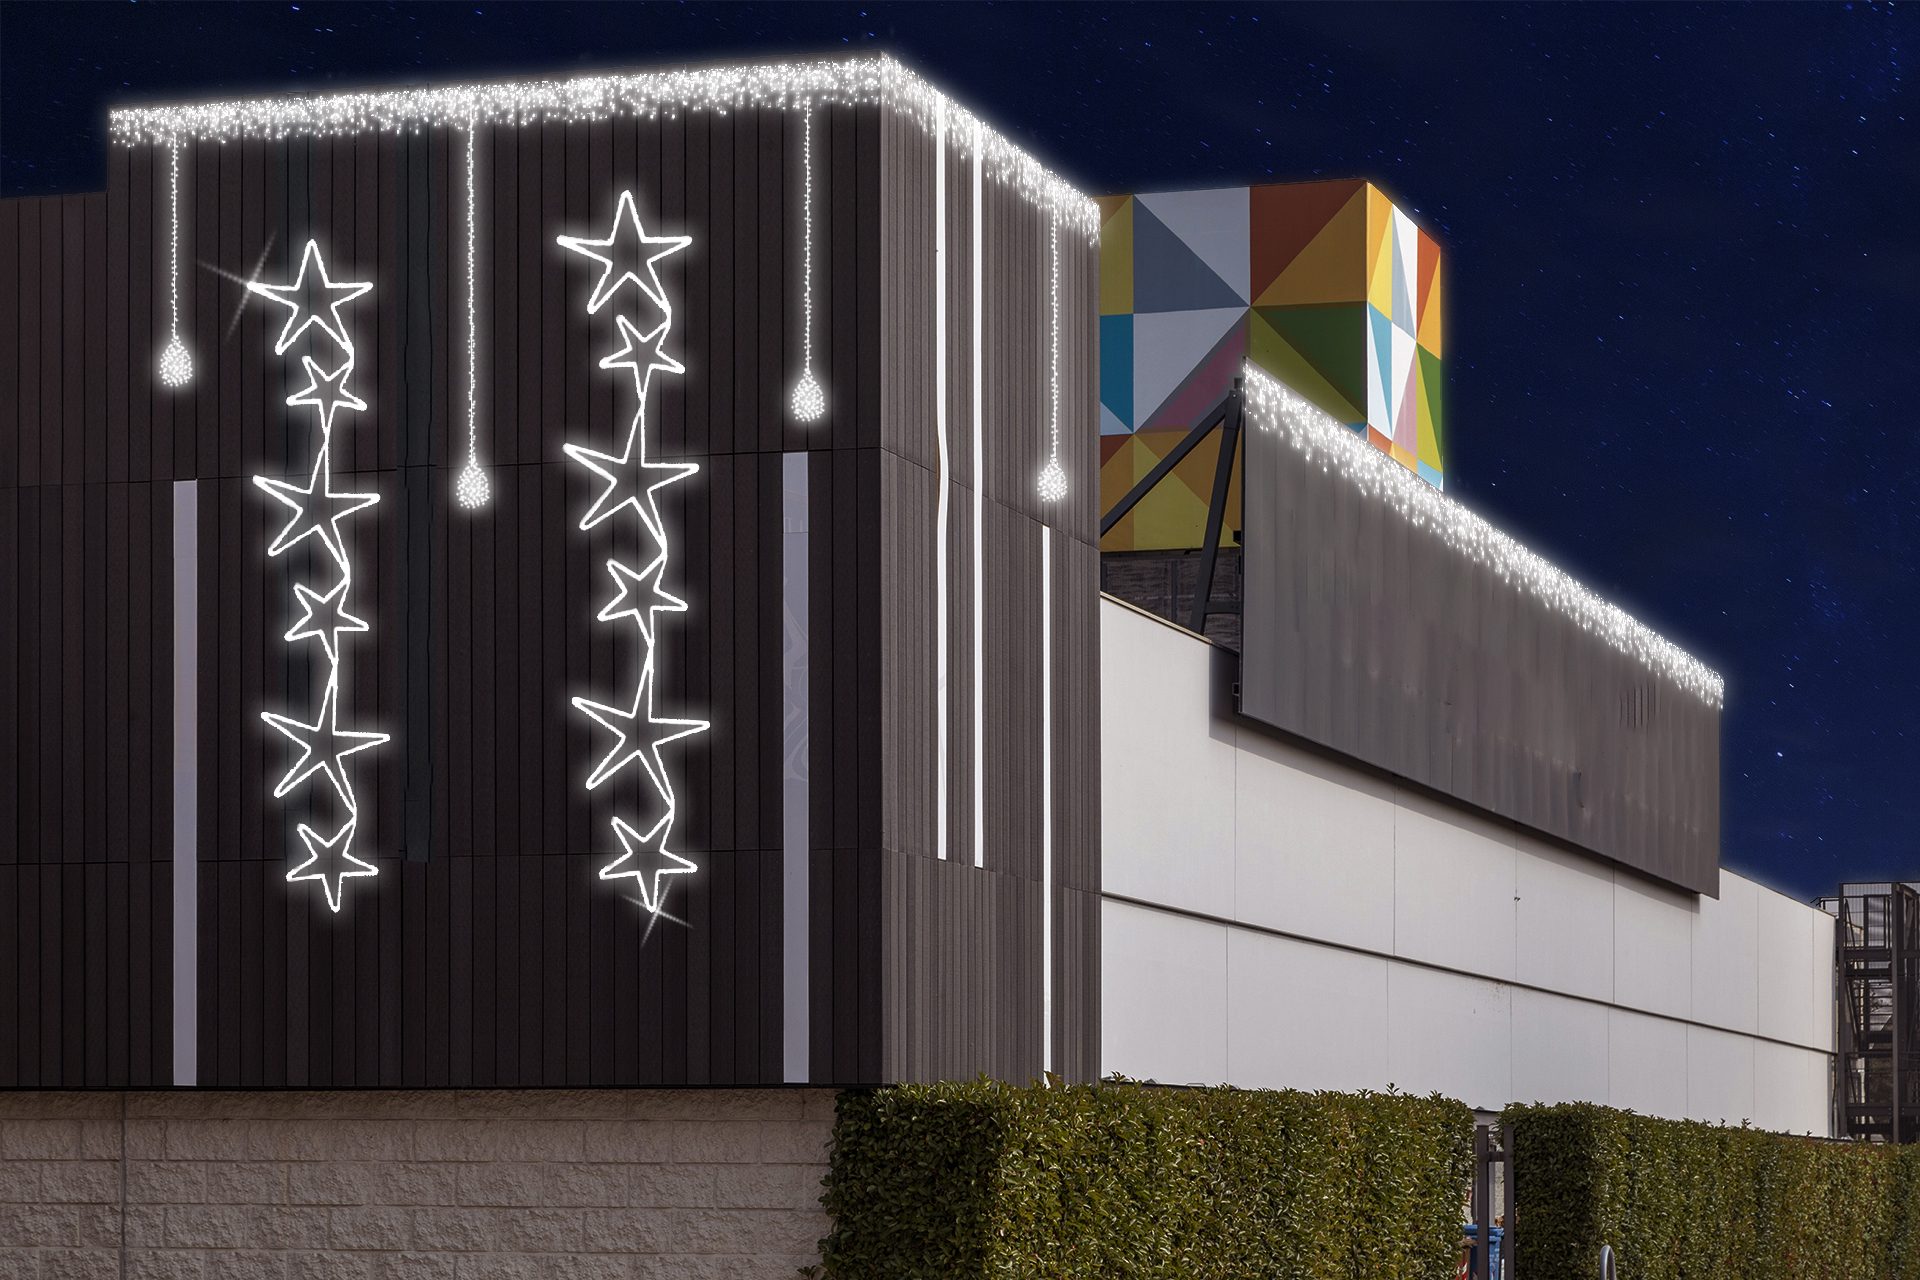 Immagine di allestimento luminoso di una facciata con caduta di 6 stelle